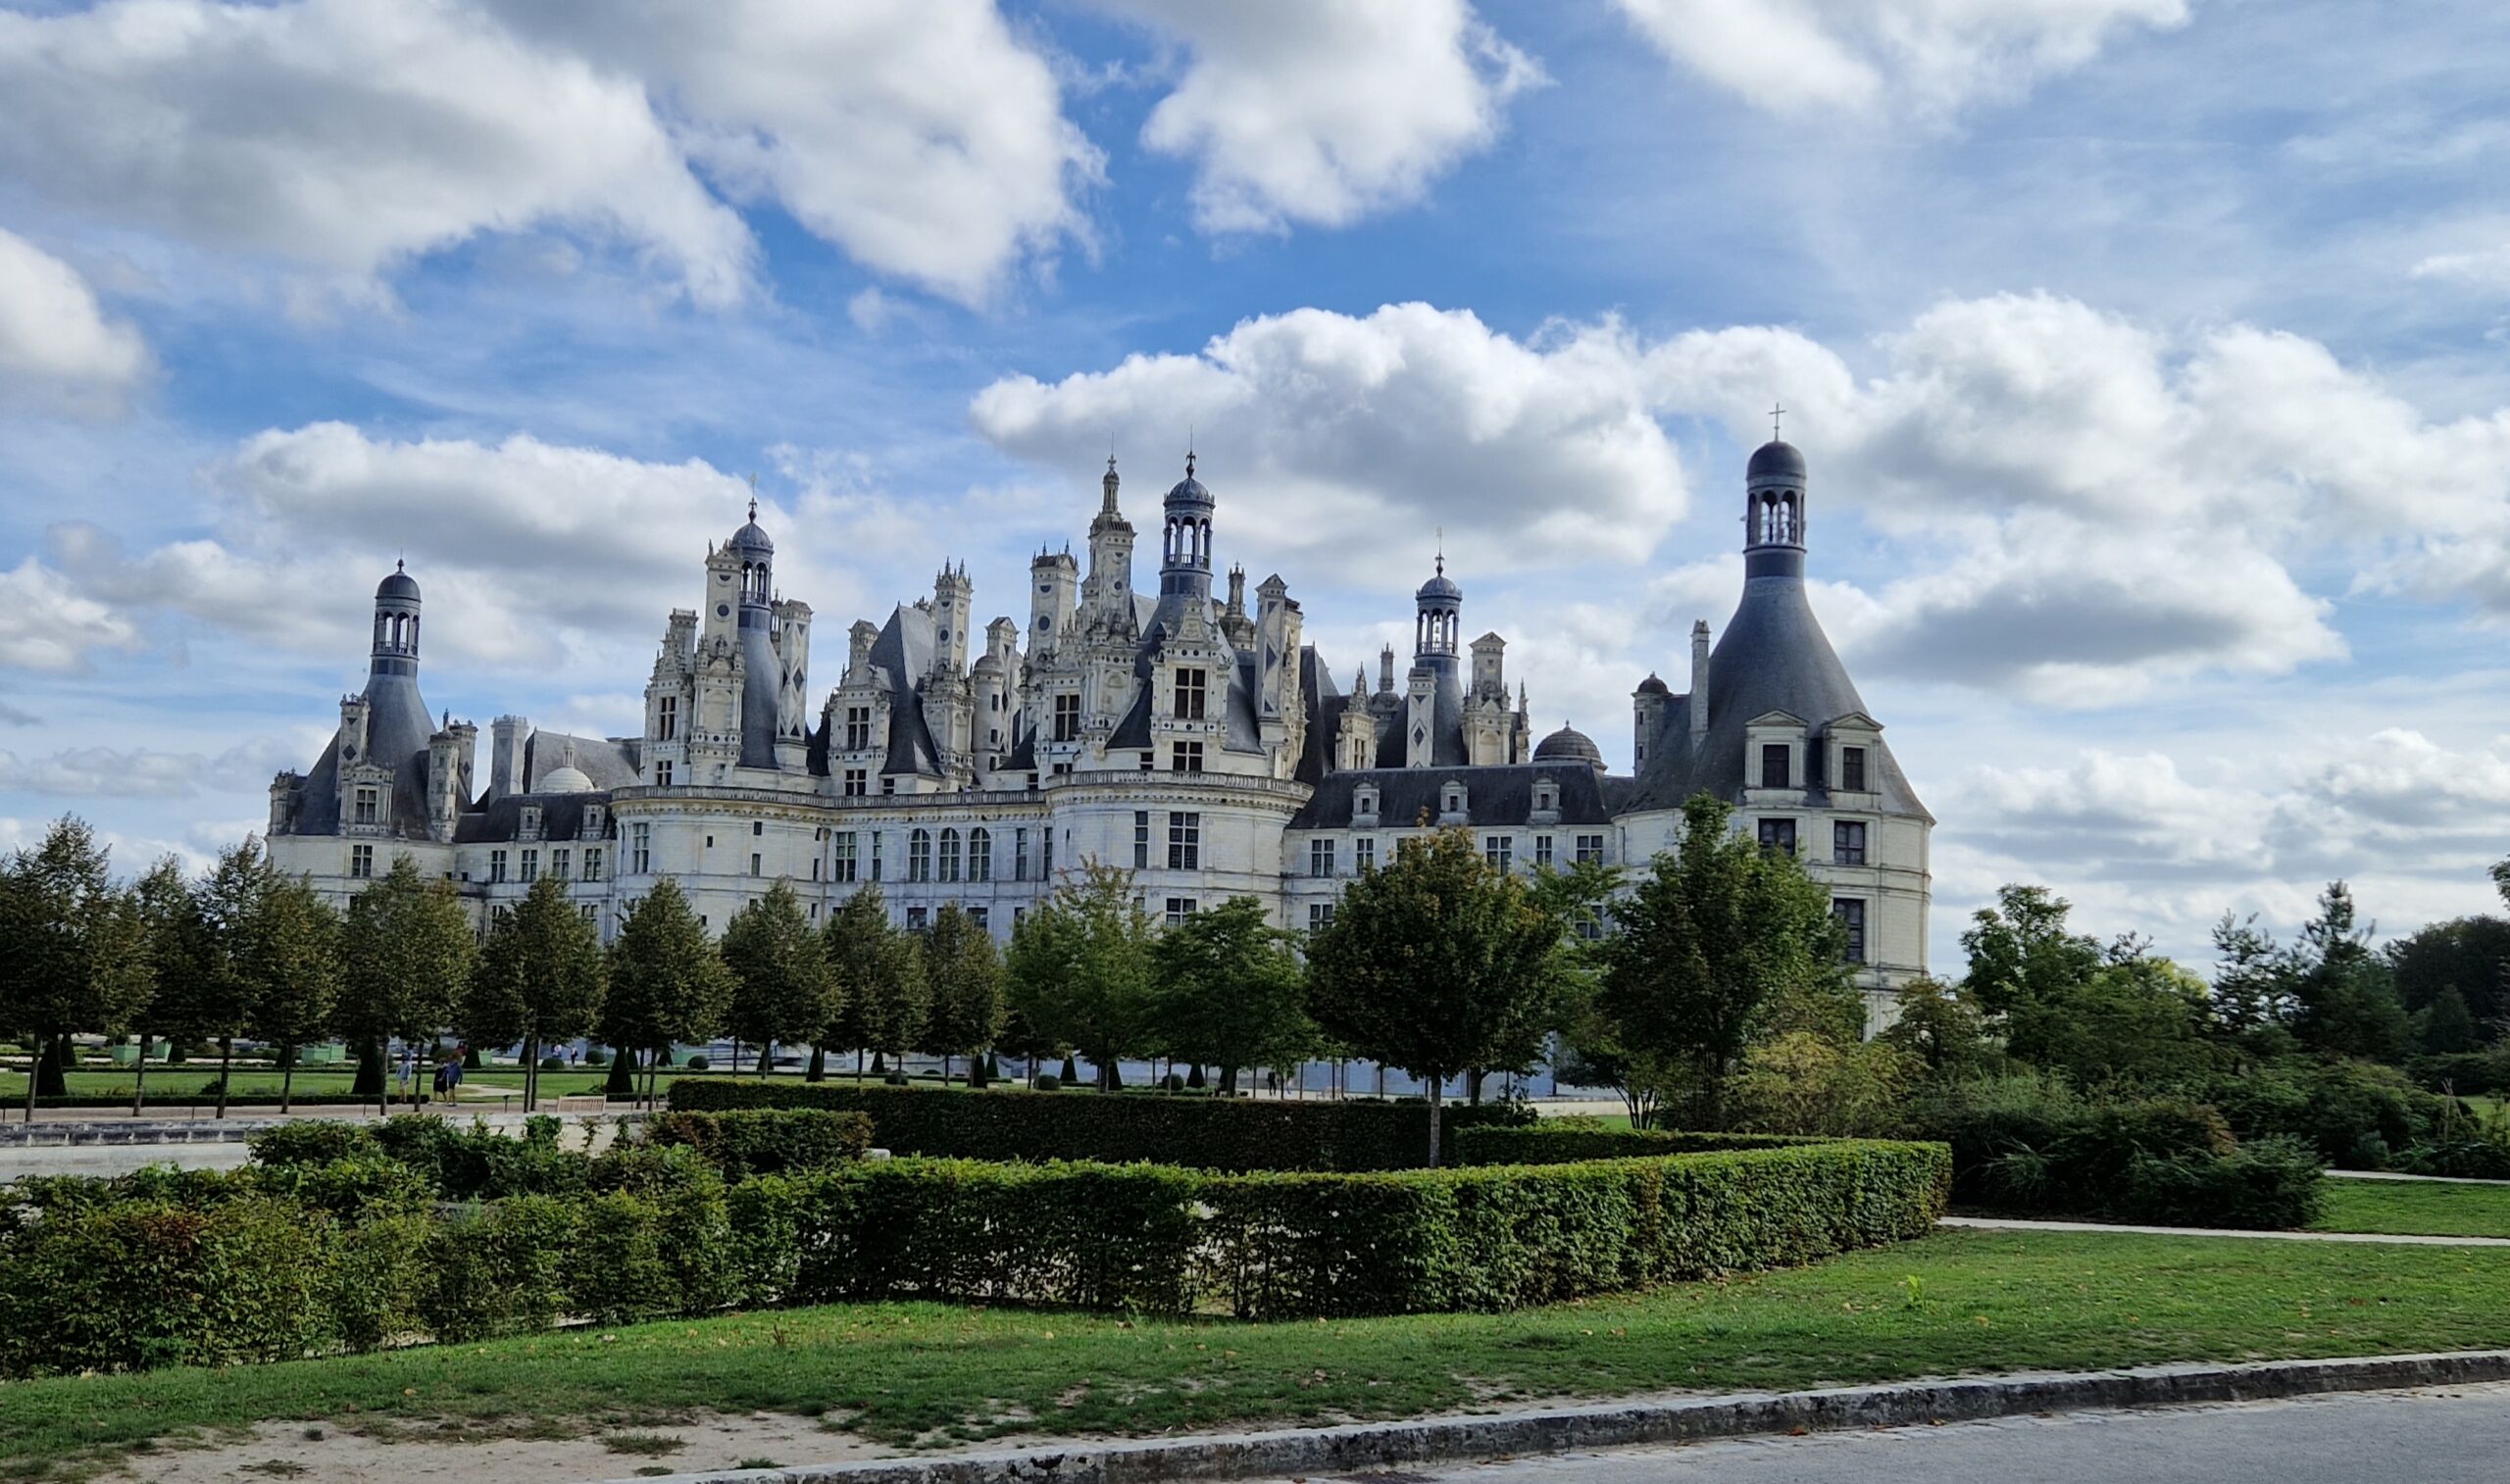 La vallée de la Loire, une escapade hors de Paris incontournable !